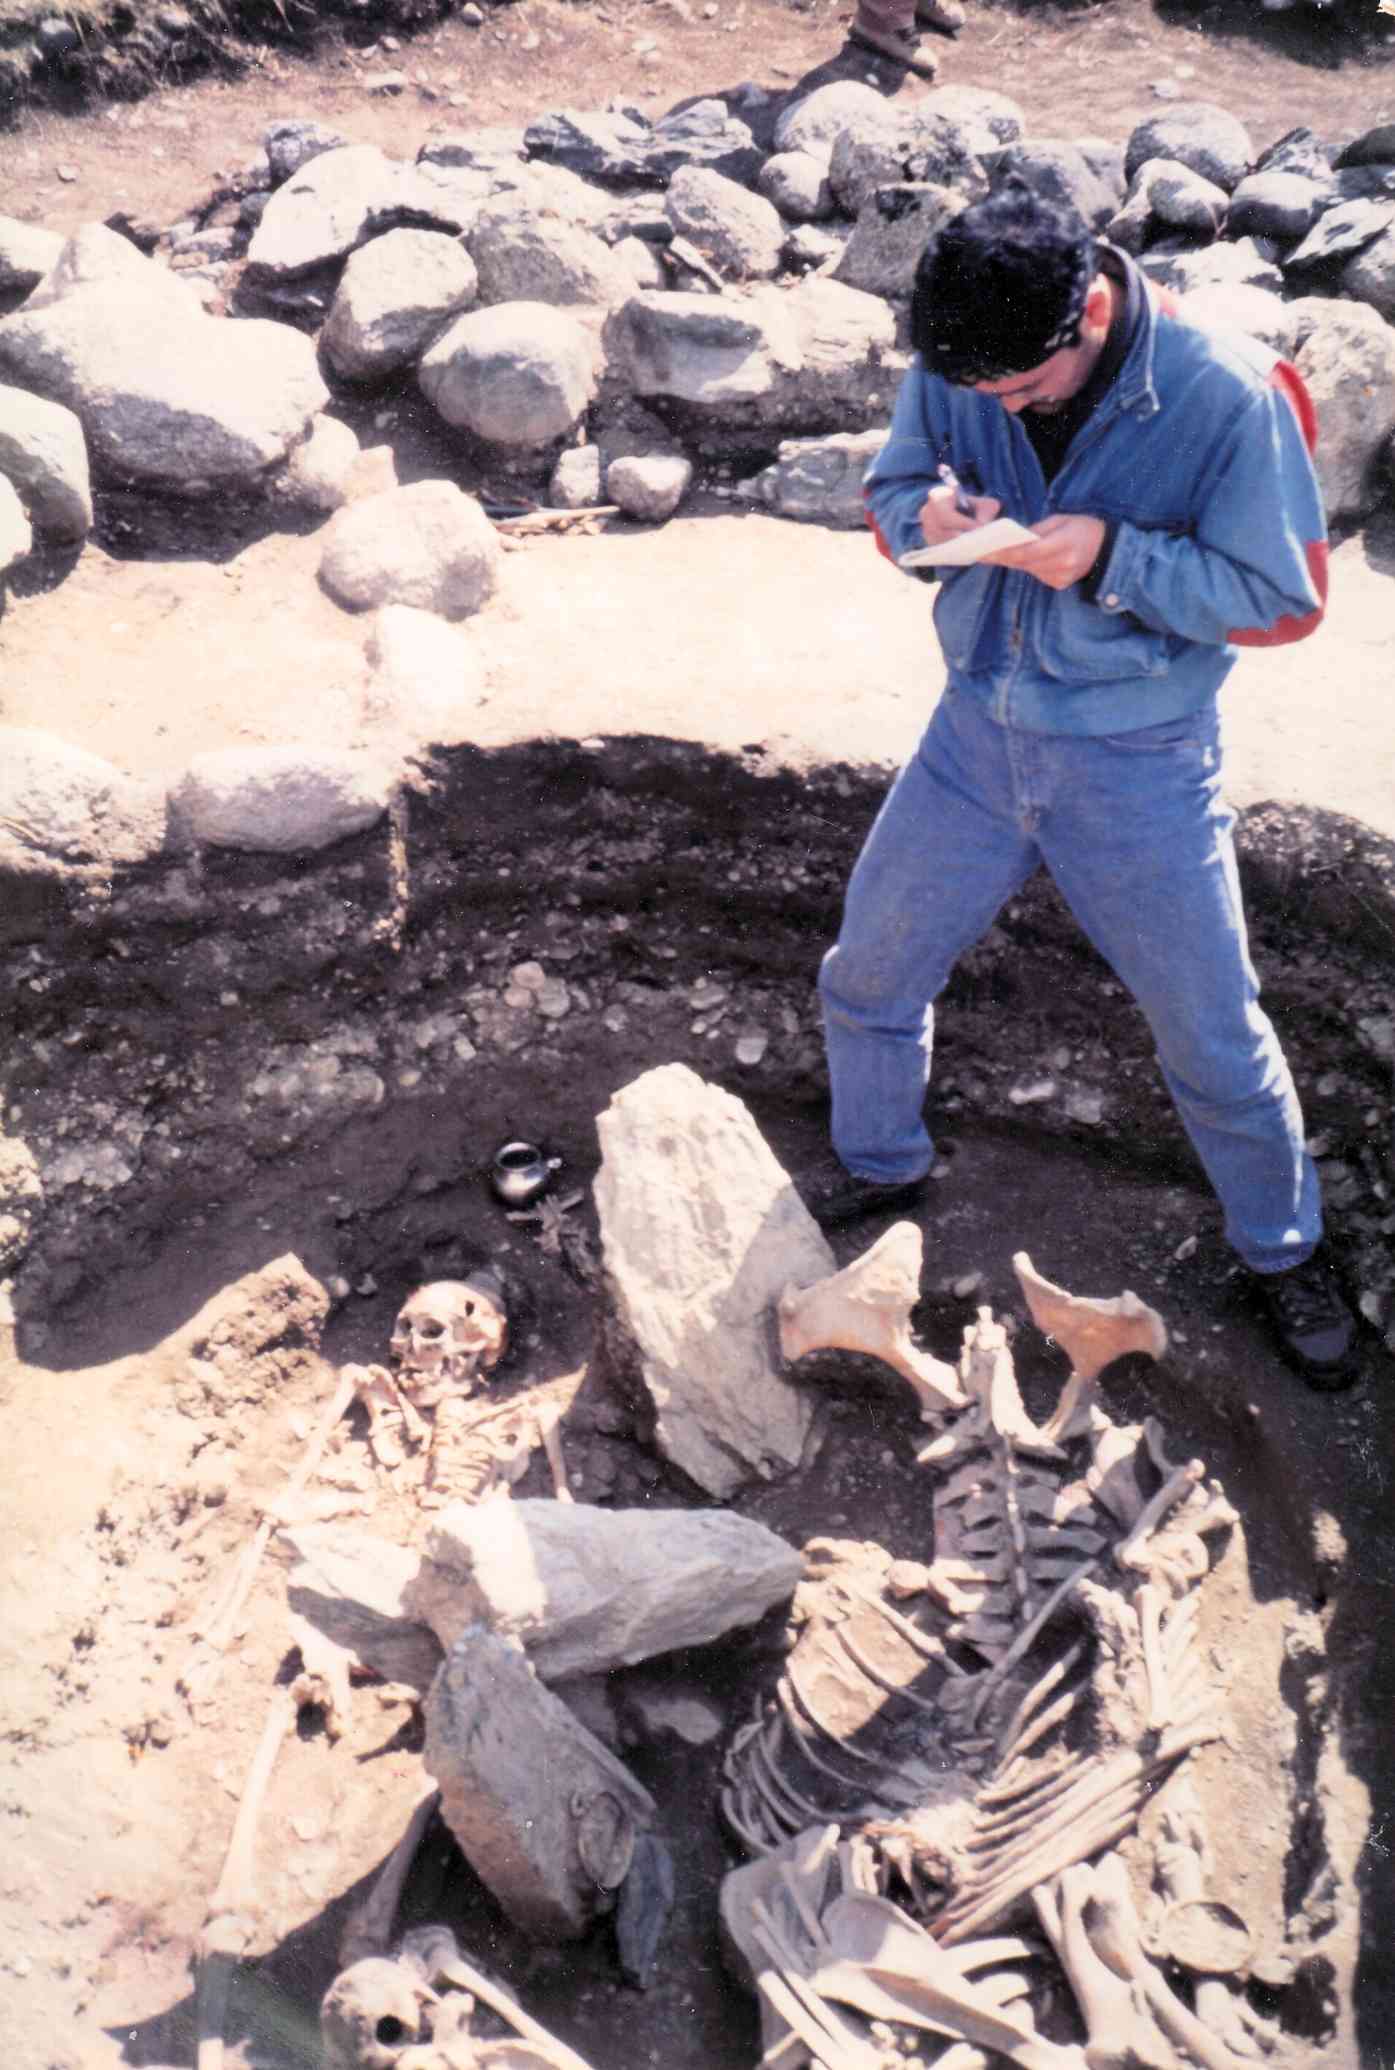 ウコック高原で。青銅鏡と銀の壺をもった女性の人骨を発掘